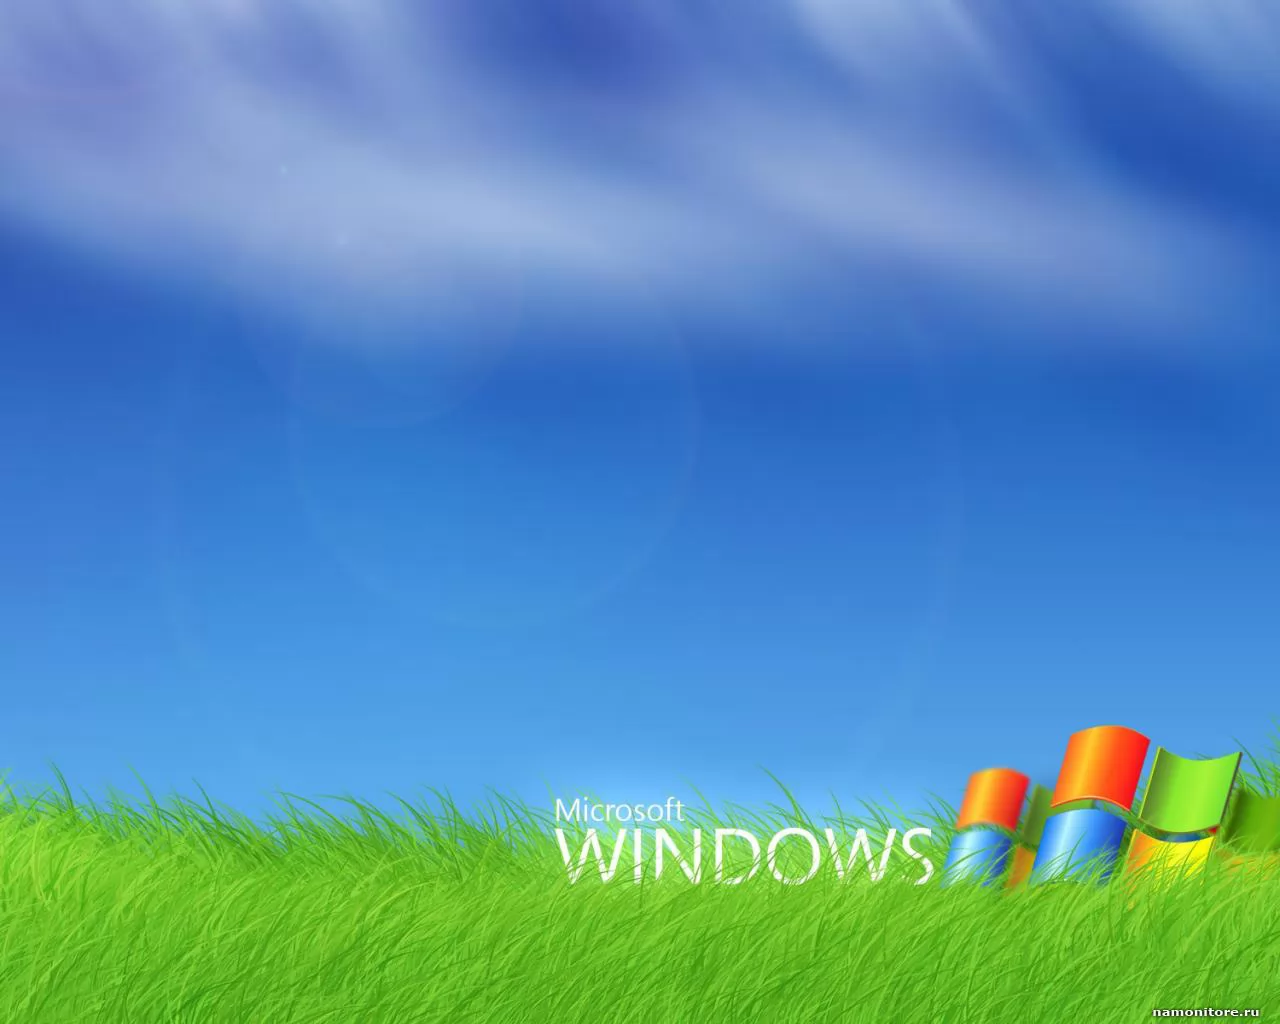 Windows XP, компьютеры и программы, рисованное х